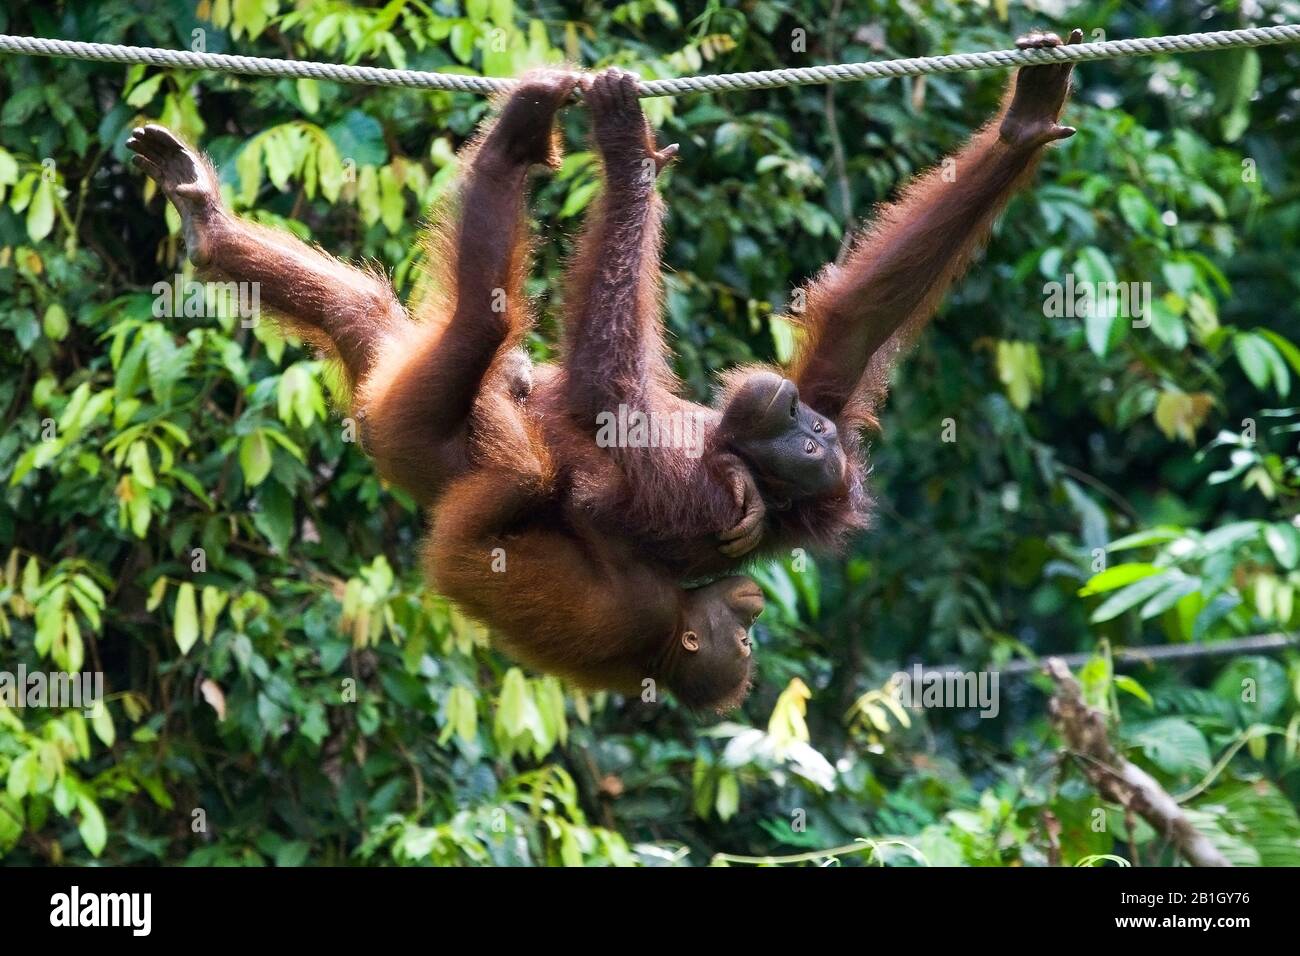 Bornean orangutan (Pongo pygmaeus pygmaeus), femelle avec de jeunes grimpants accrochés sur une corde, Malaisie, Bornéo, Sépilok Orangutan Rehabilitation Center Banque D'Images